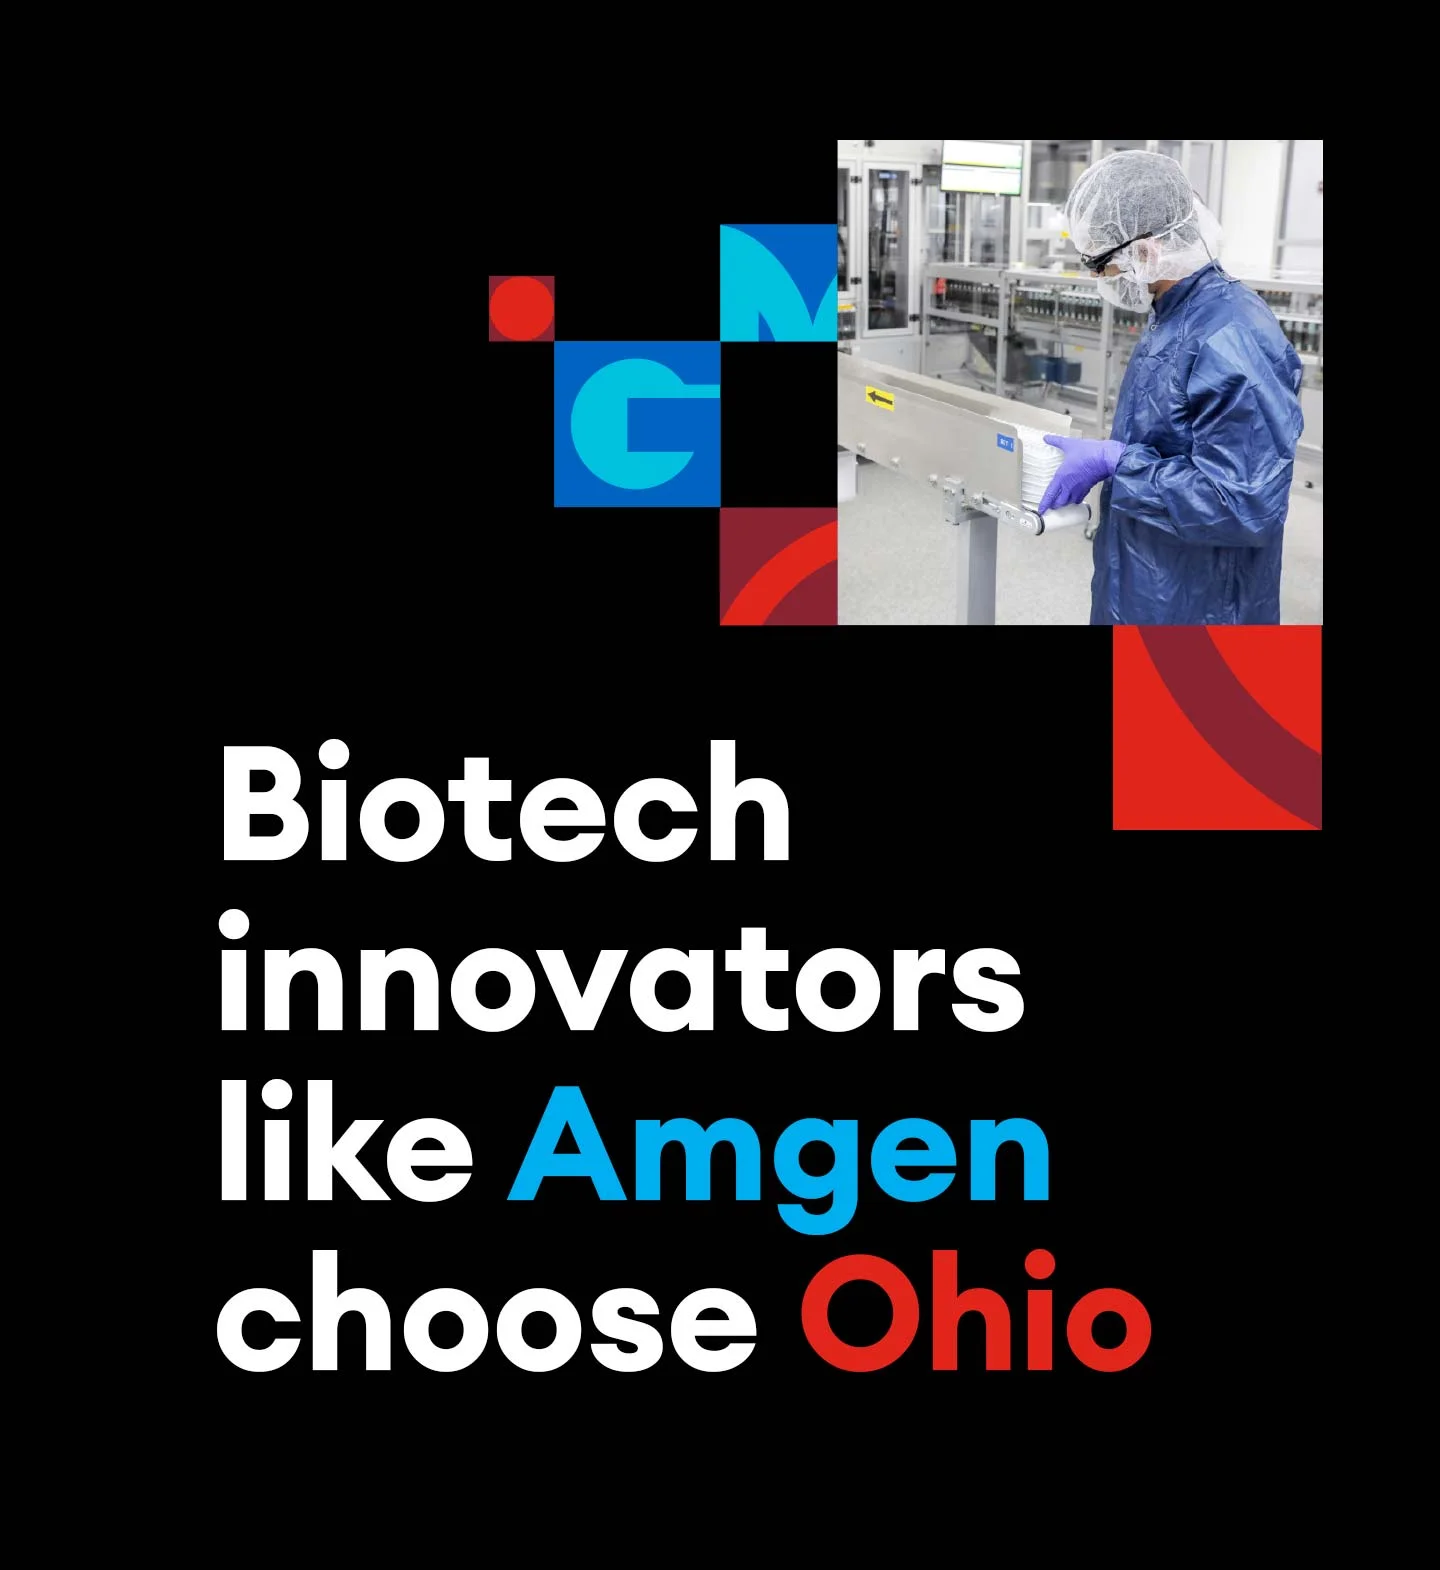 Biotech innovator Amgen